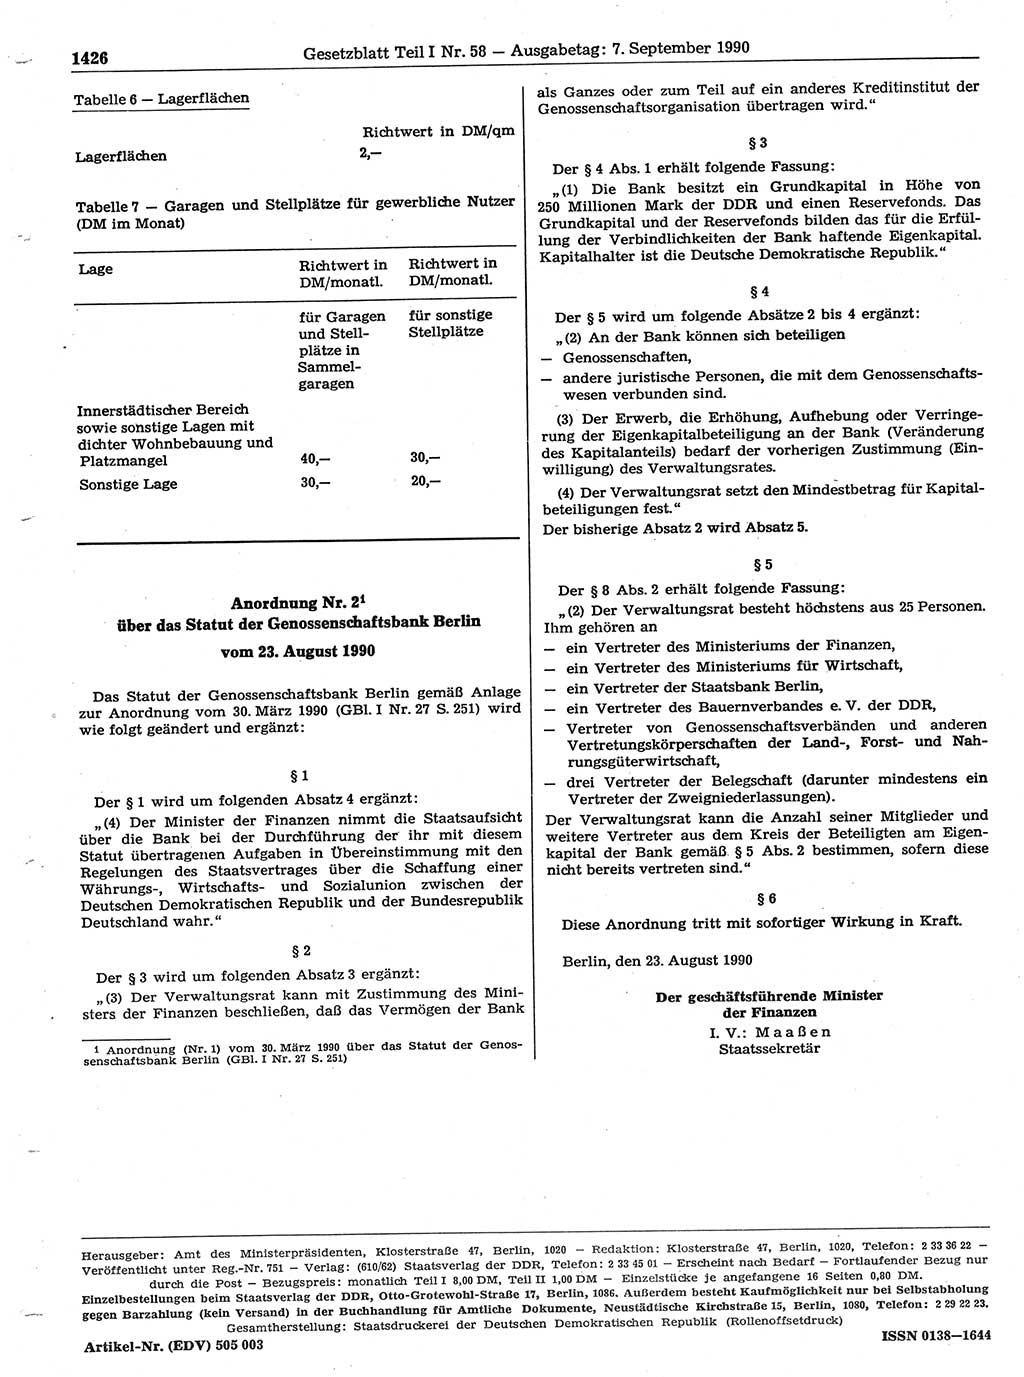 Gesetzblatt (GBl.) der Deutschen Demokratischen Republik (DDR) Teil Ⅰ 1990, Seite 1426 (GBl. DDR Ⅰ 1990, S. 1426)